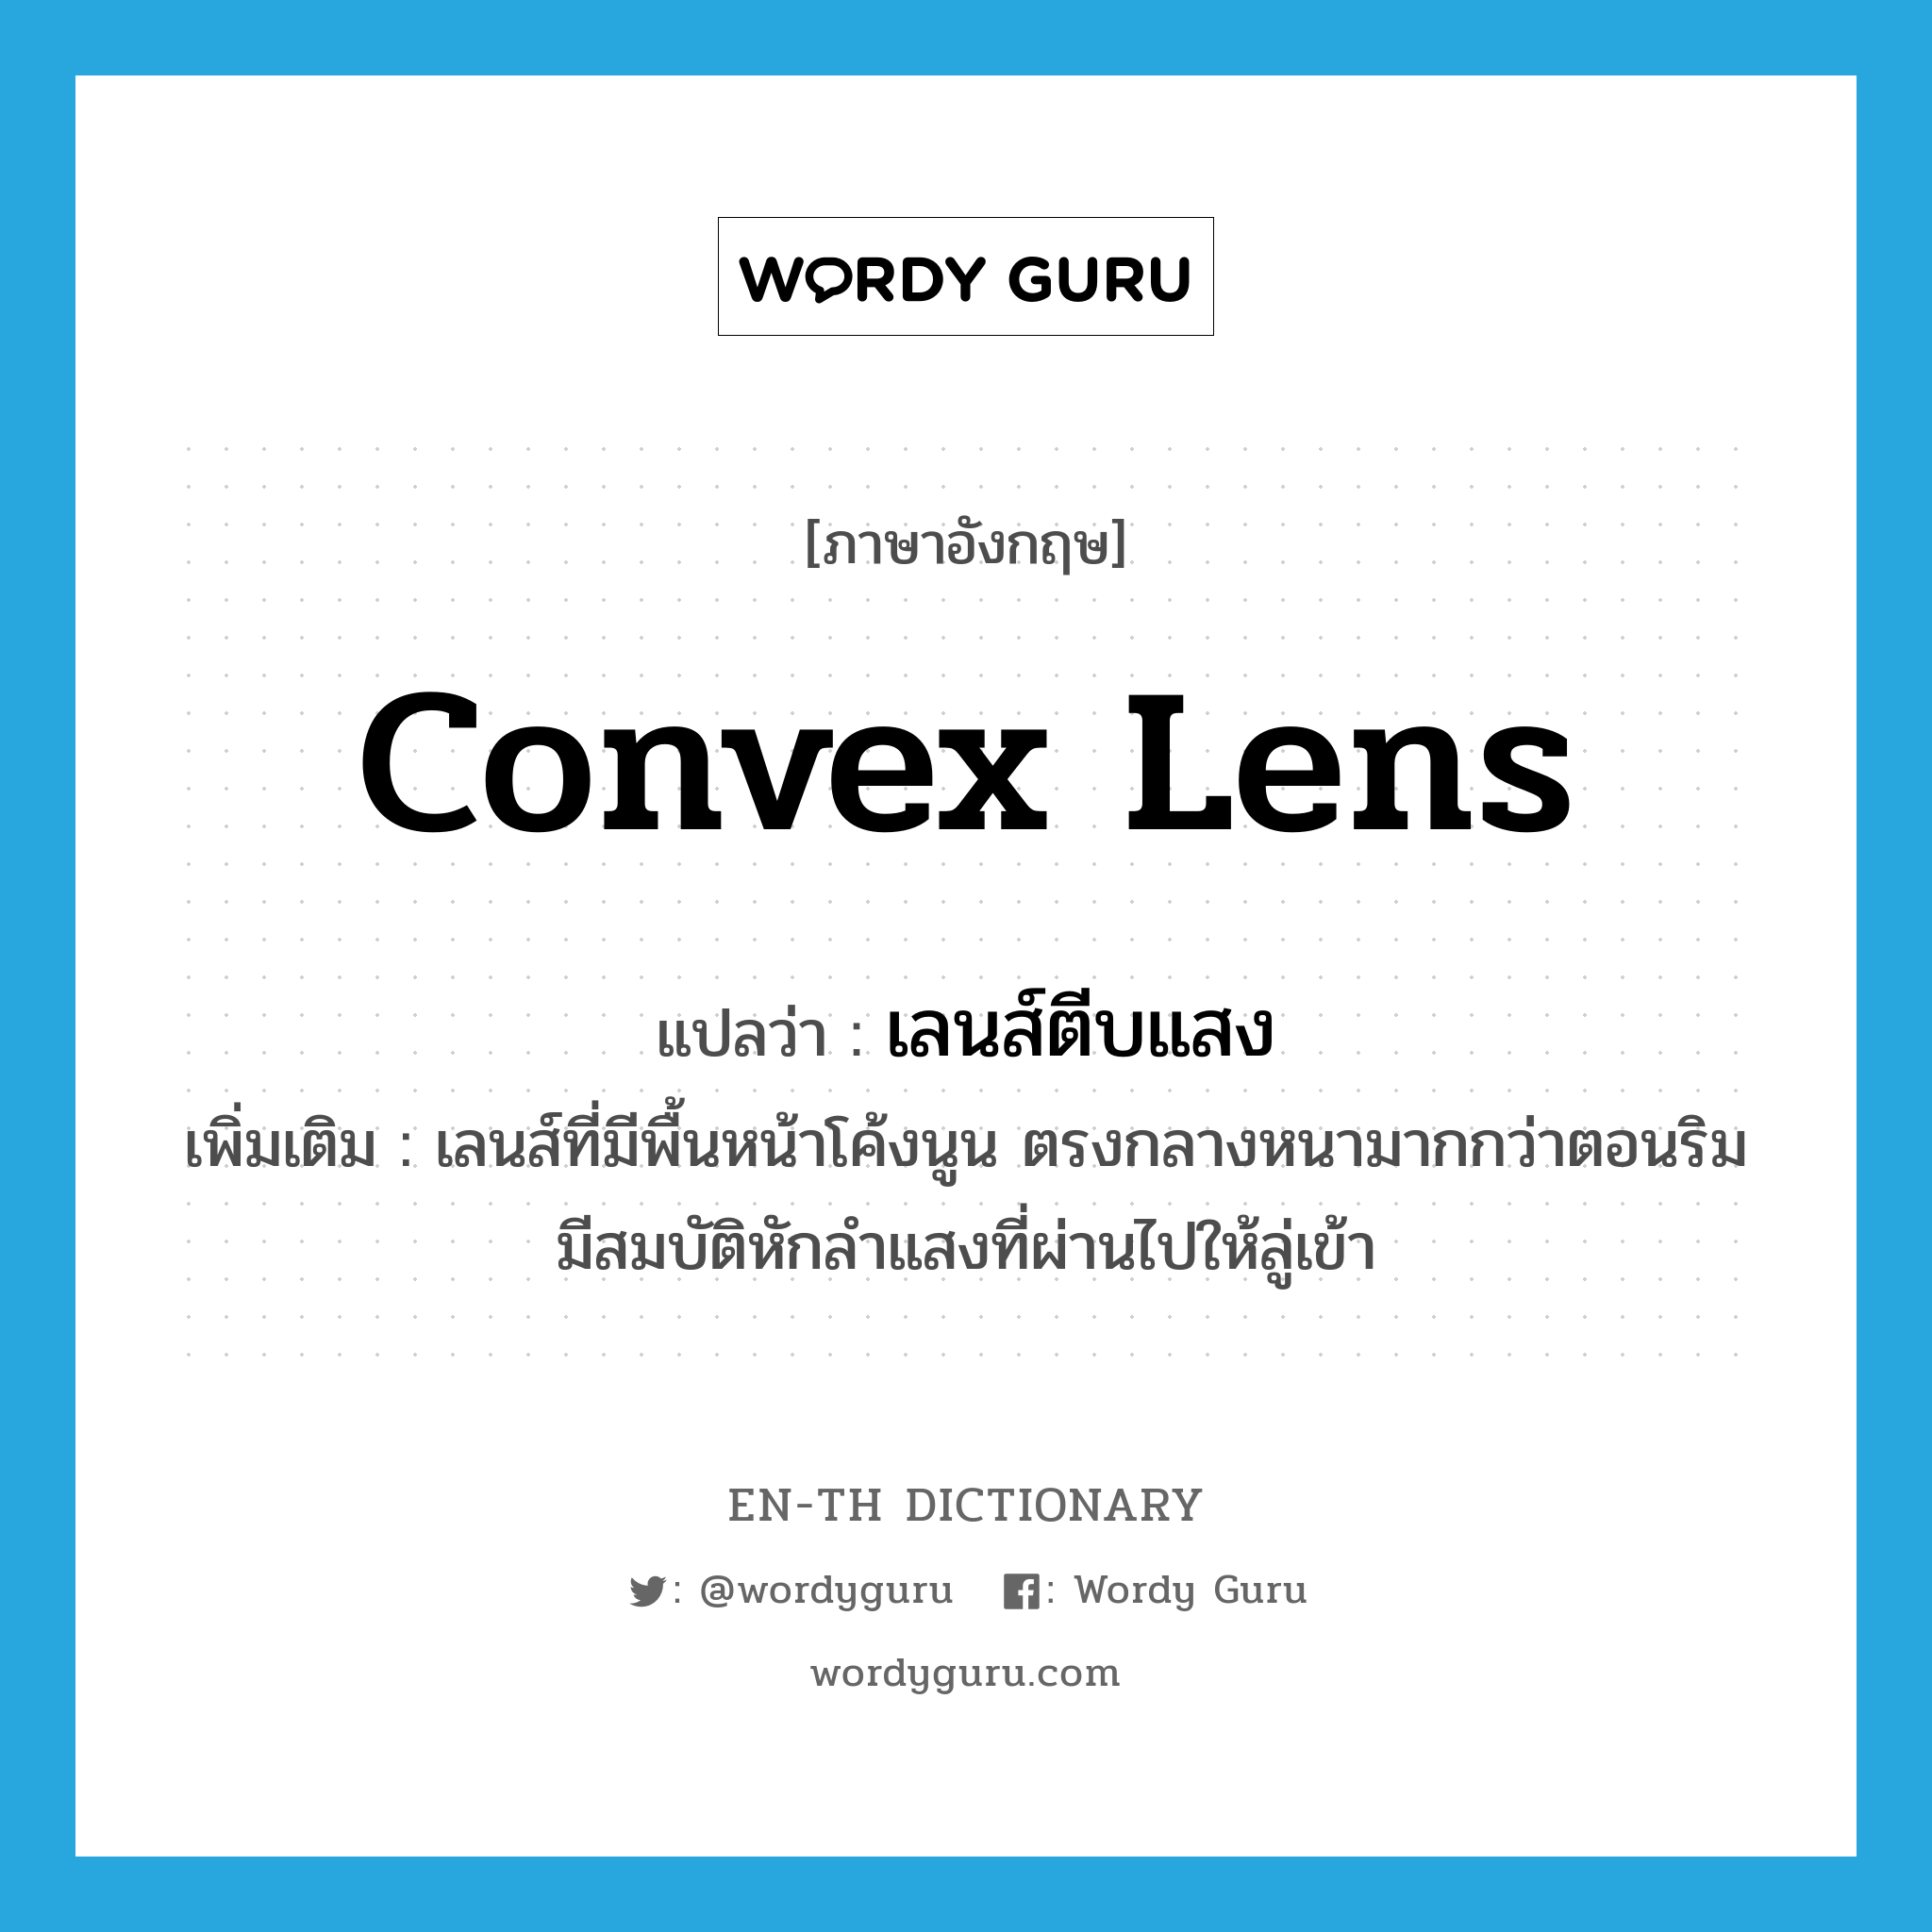 เลนส์ตีบแสง ภาษาอังกฤษ?, คำศัพท์ภาษาอังกฤษ เลนส์ตีบแสง แปลว่า convex lens ประเภท N เพิ่มเติม เลนส์ที่มีพื้นหน้าโค้งนูน ตรงกลางหนามากกว่าตอนริม มีสมบัติหักลำแสงที่ผ่านไปให้ลู่เข้า หมวด N